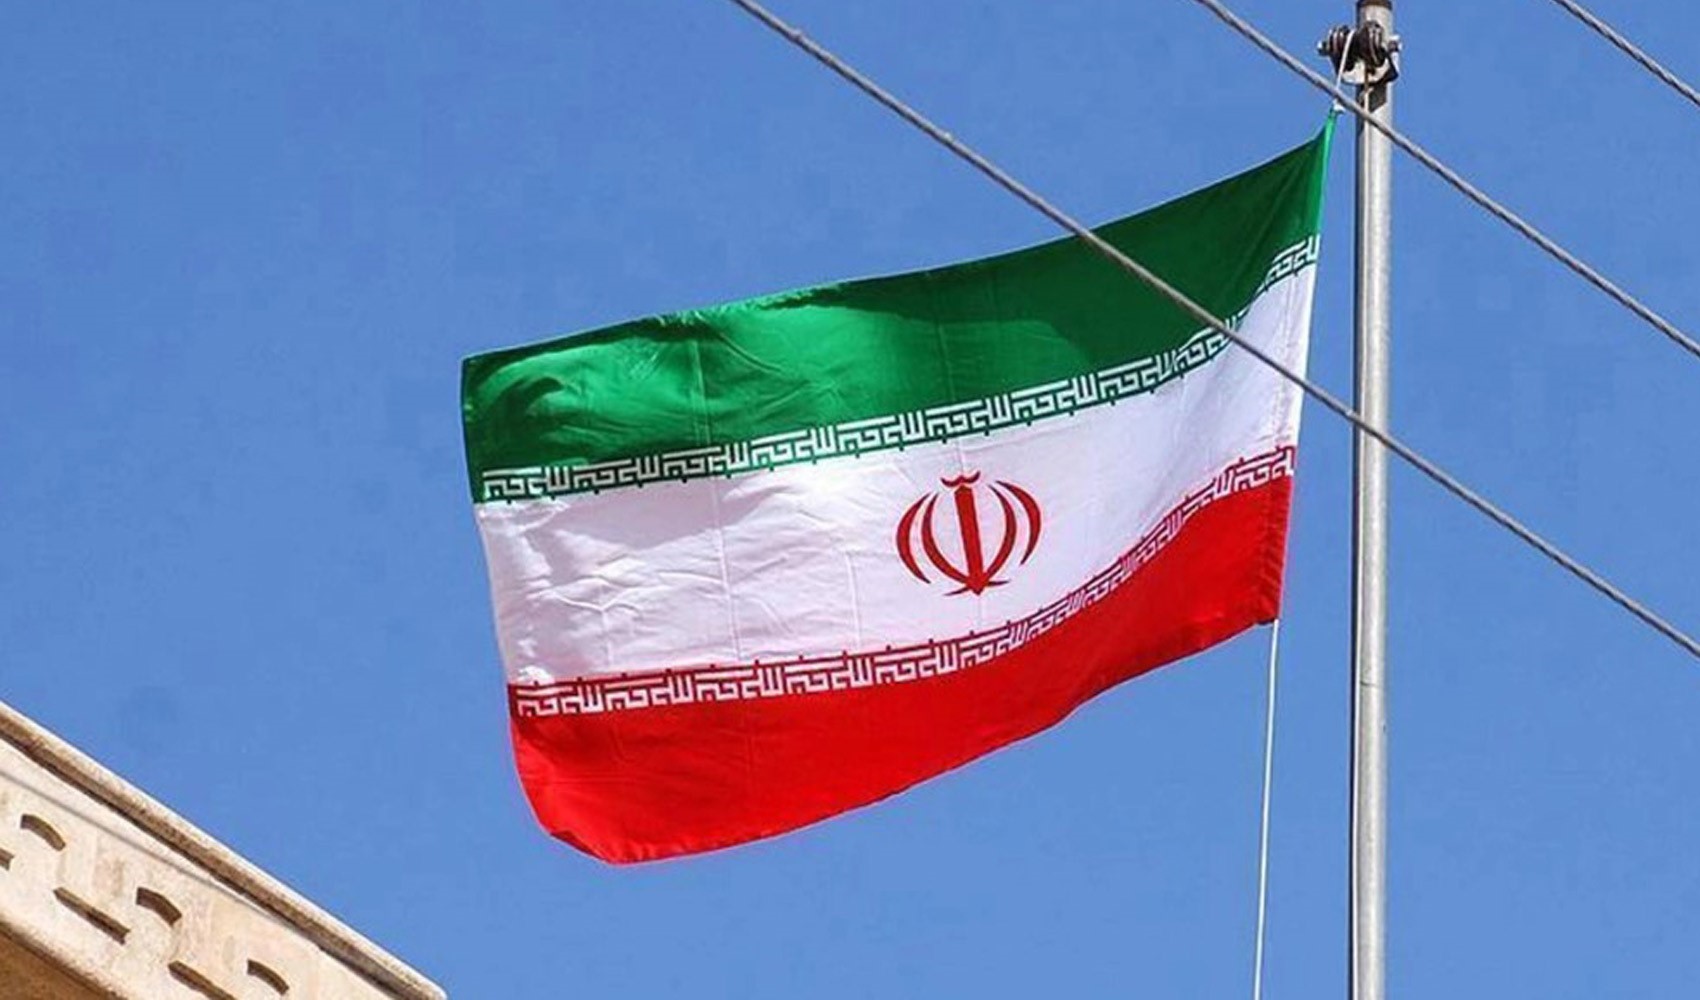 İran, İsrail'e karşı muhtemel saldırıyı 'meşru müdafaa' olarak gördü: 'Savunma zorunluluktur'